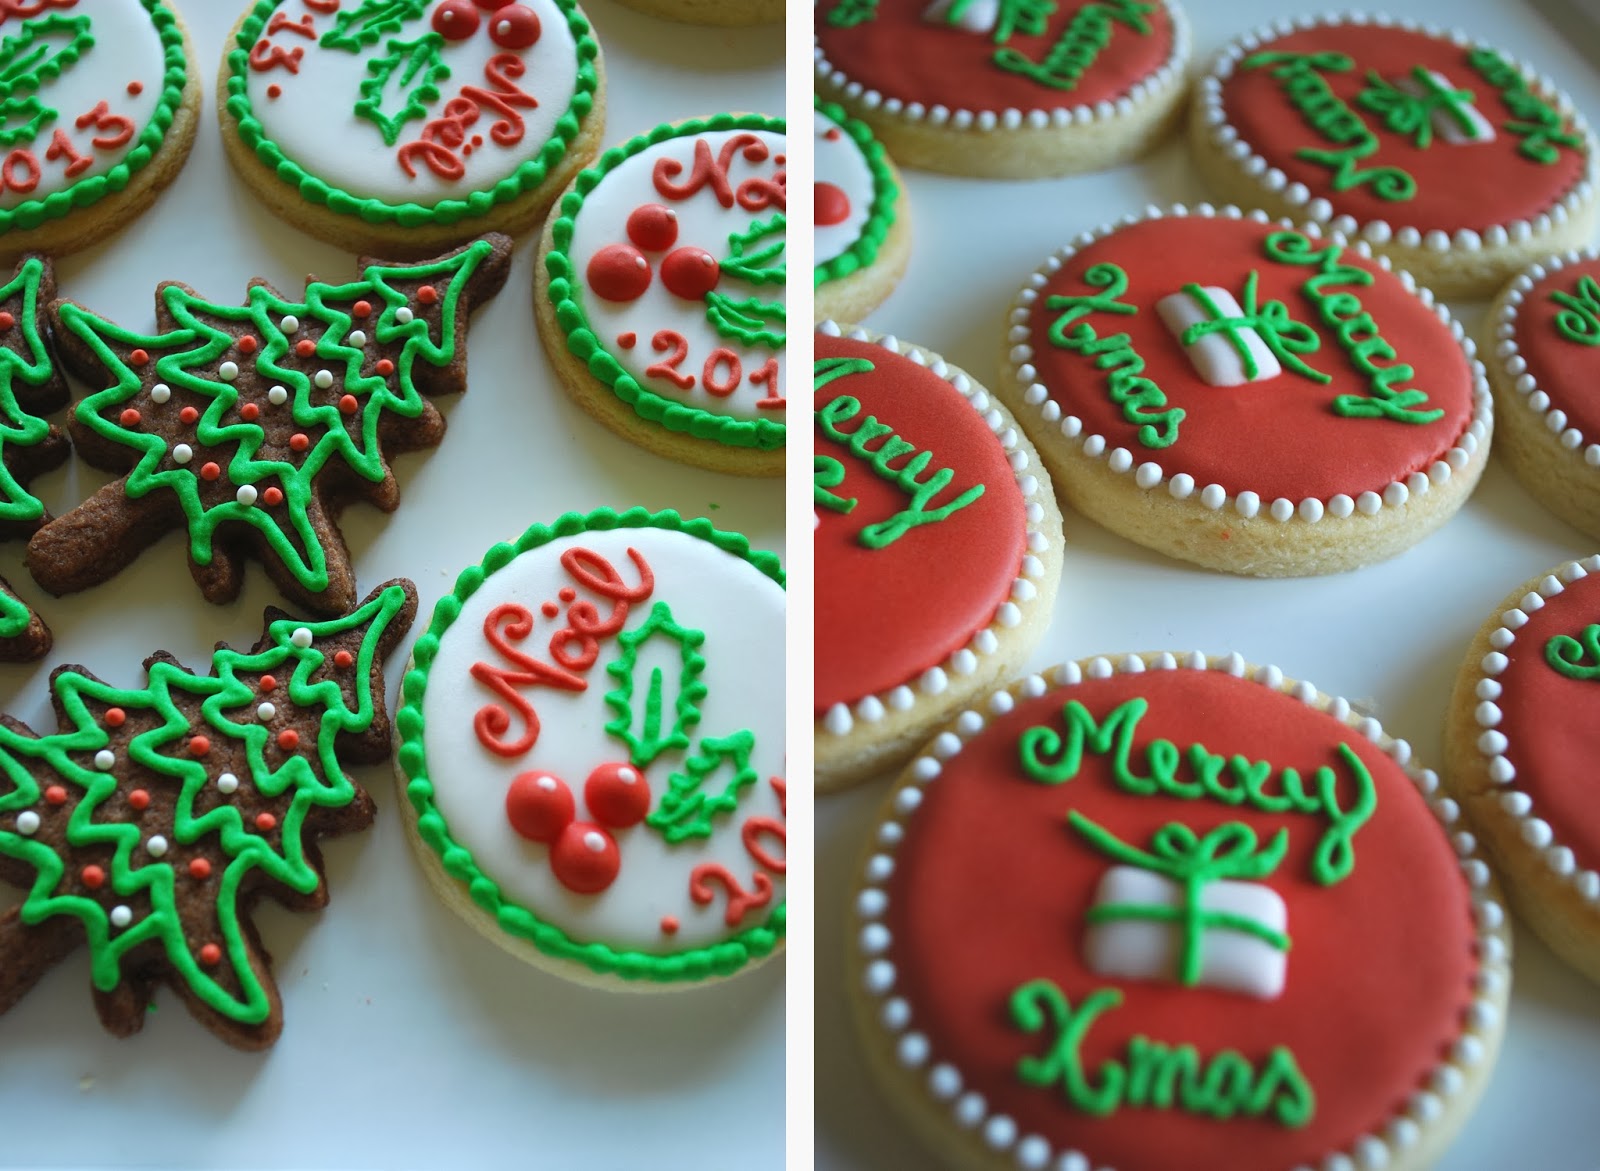 Biscotti Decorati Natale.La Signora Dei Biscotti Biscotti Decorati Di Natale